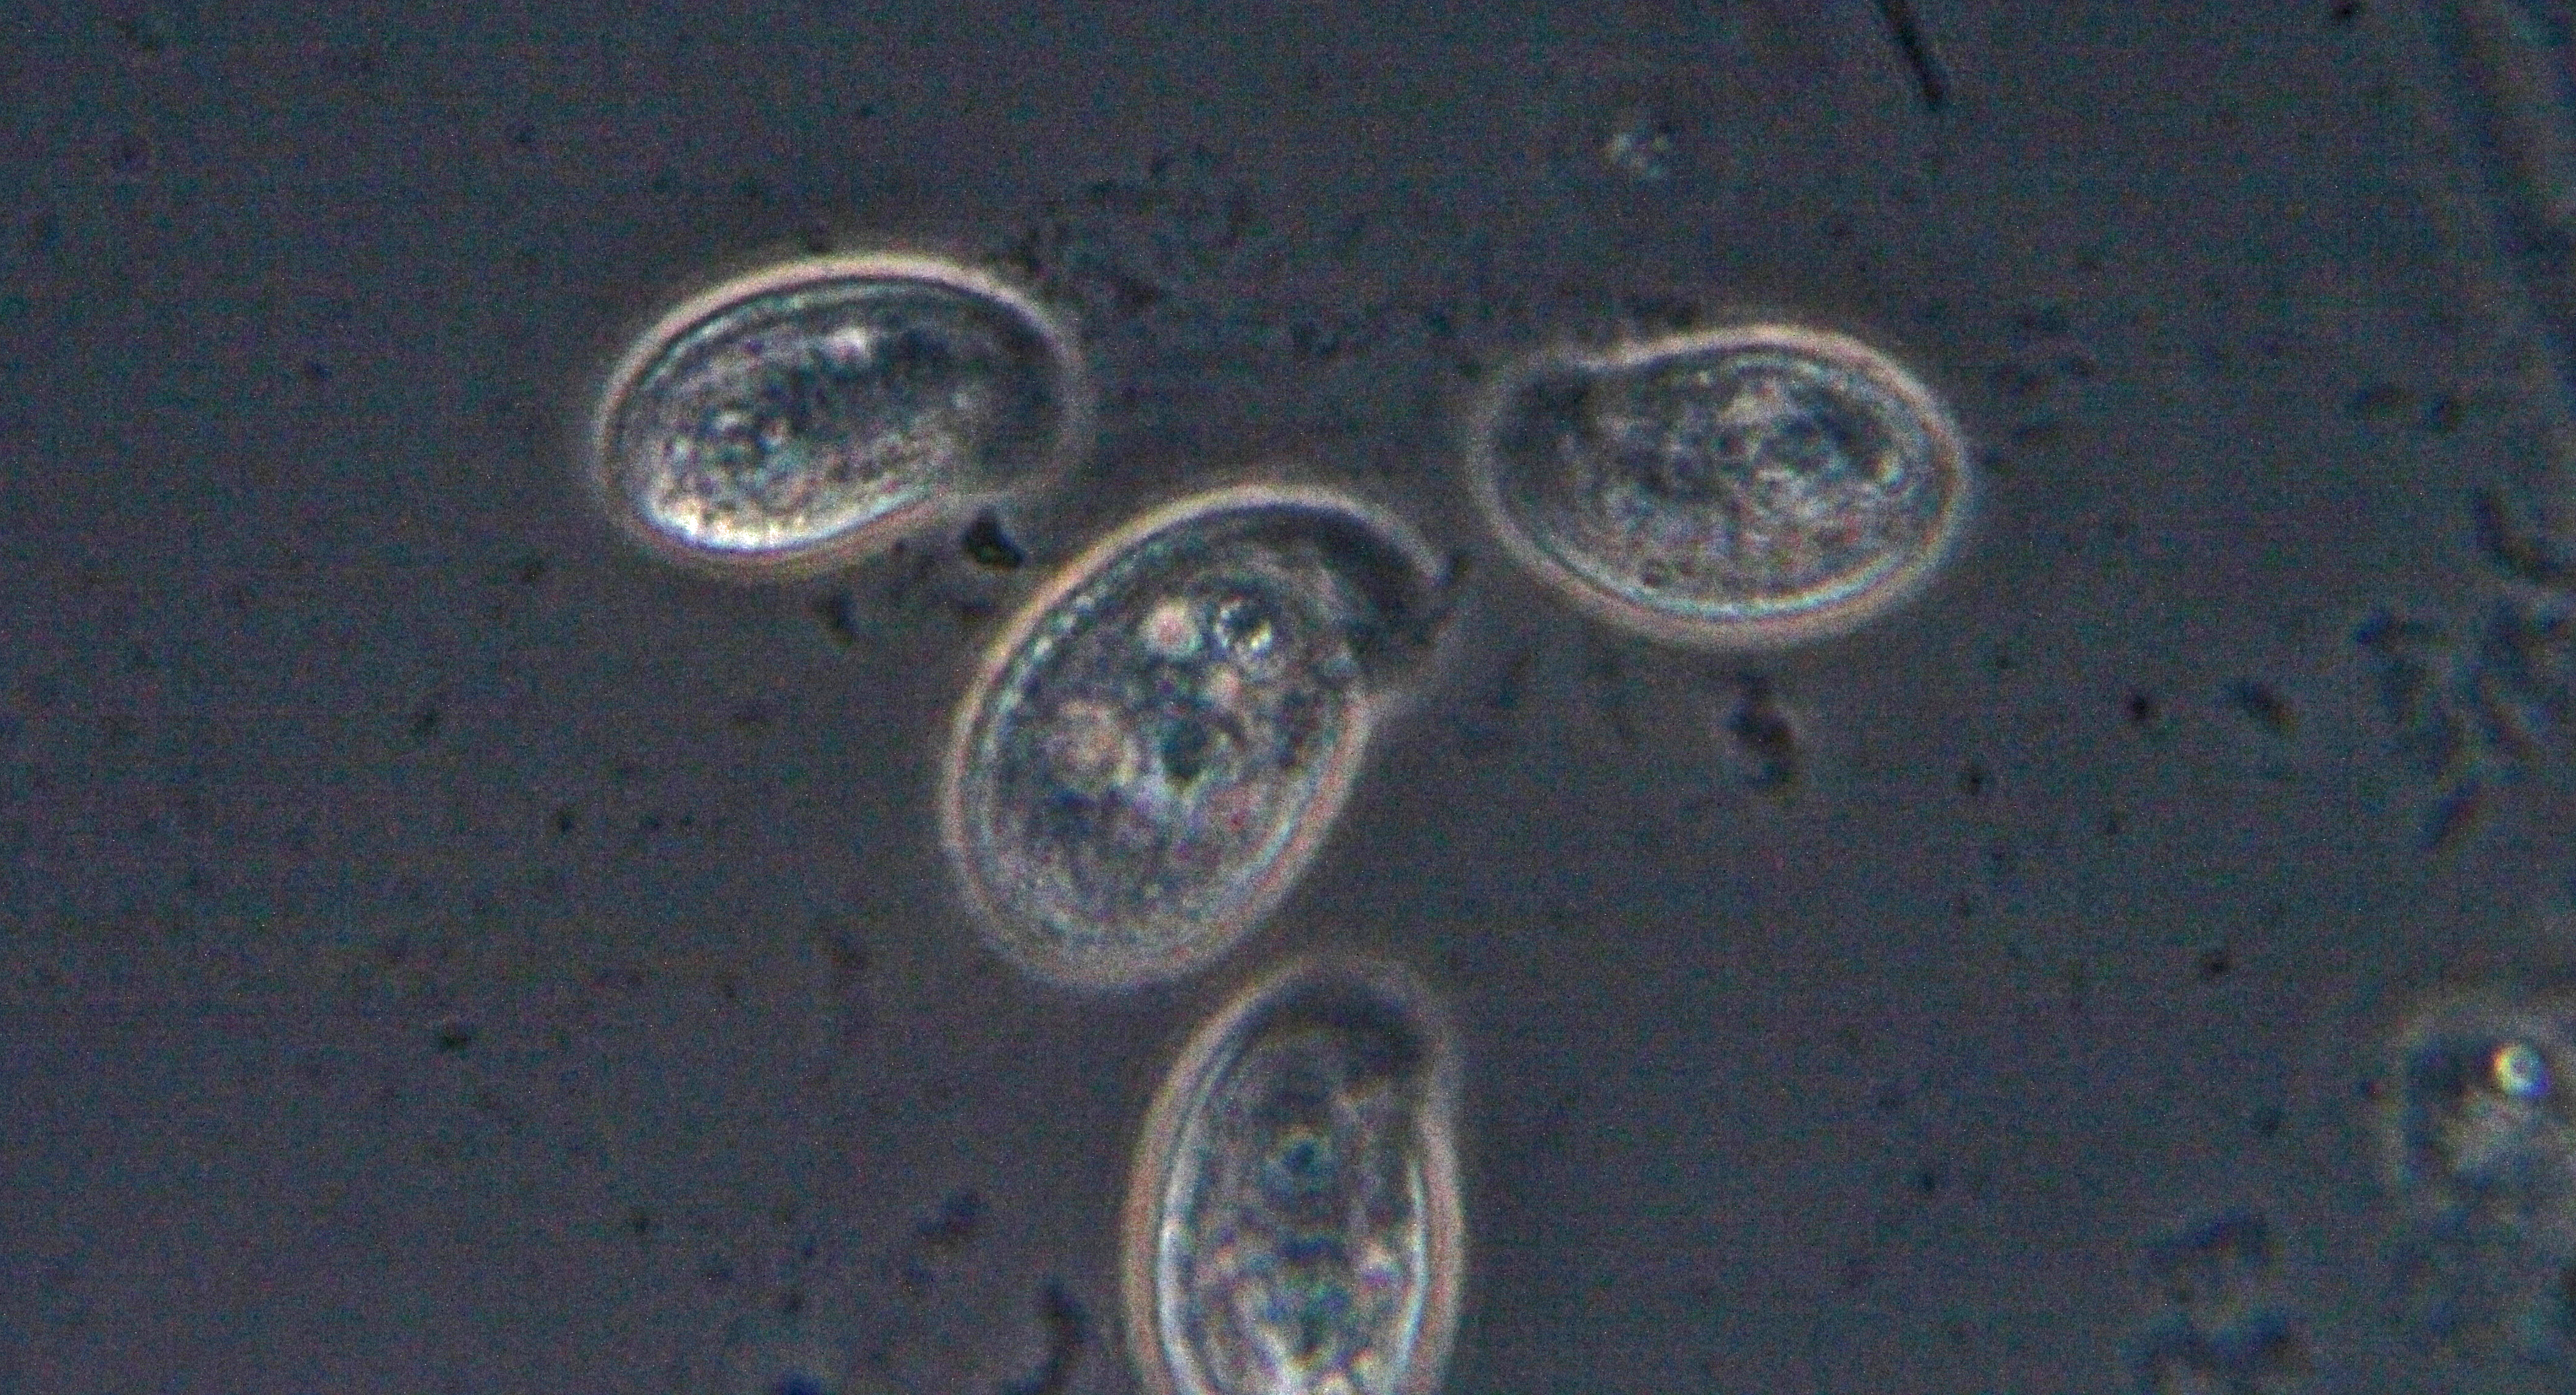 Chilodonella, petit cilié disymétrique